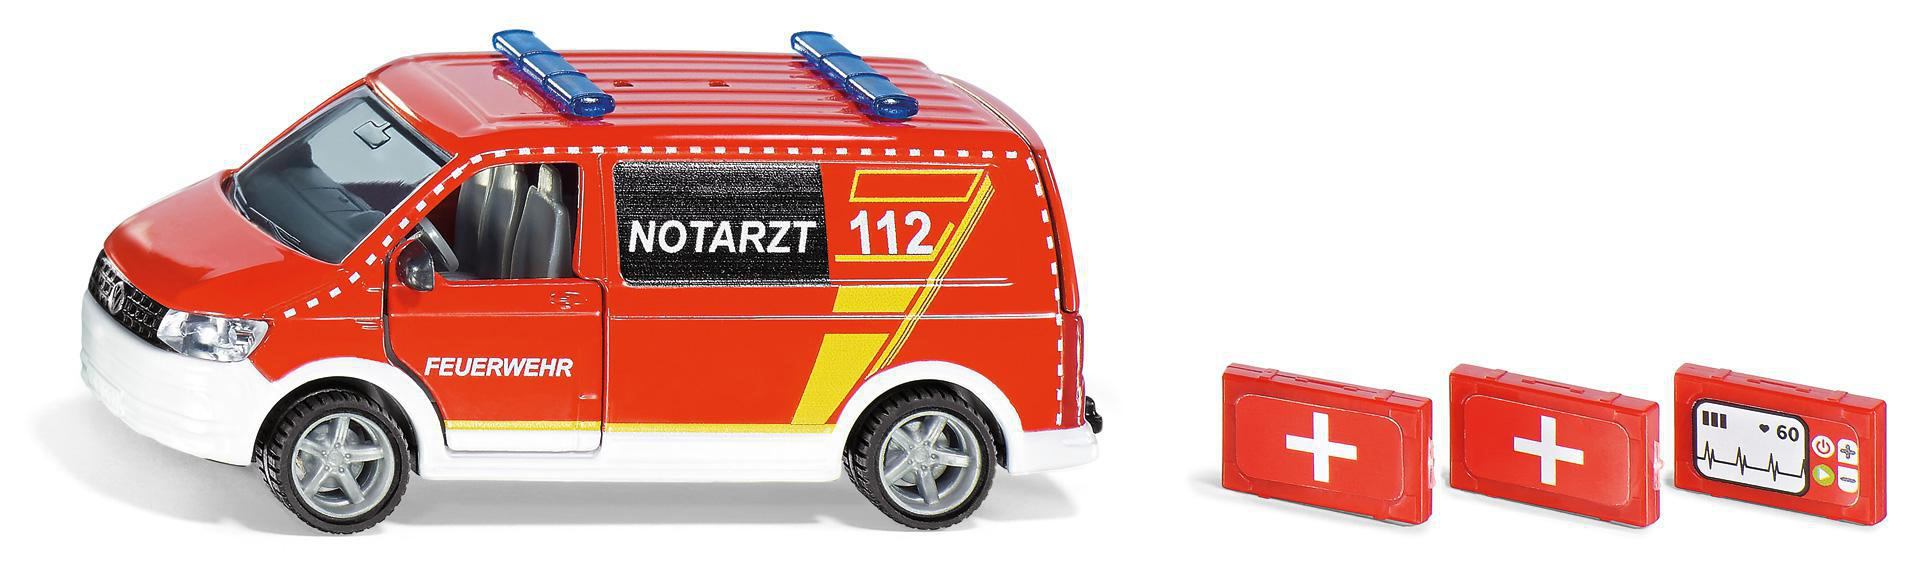 SIKU 2116 Spielzeugmodellfahrzeug, Mehrfarbig T6 Notarztwagen VW